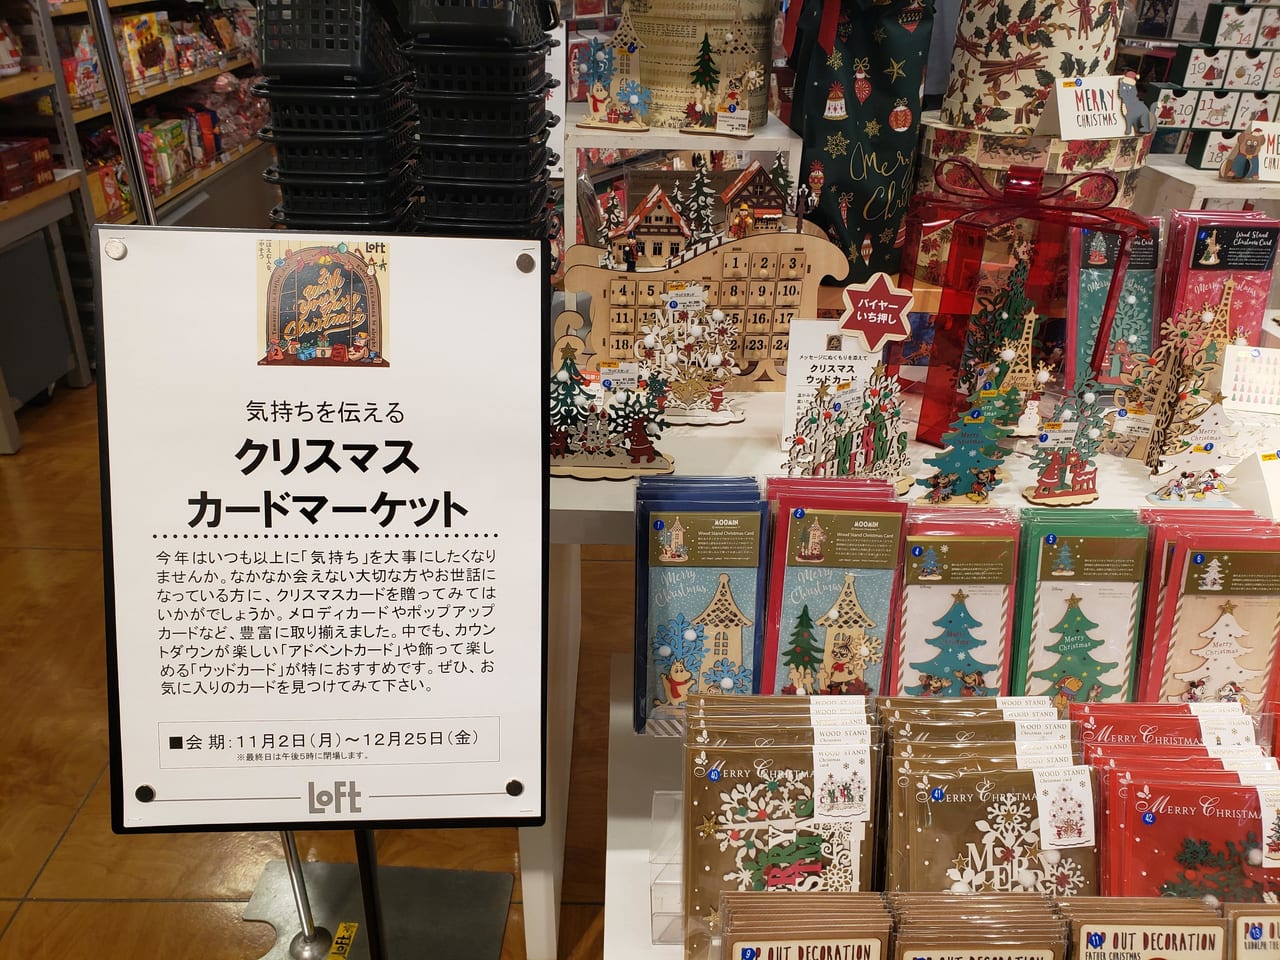 武蔵野市 クリスマスのプレゼントに 心を込めたカードも添えてみませんか 吉祥寺loftの クリスマスカードマーケット には サンタの皆さんも驚くほど素敵なカードがいっぱいです 号外net 武蔵野市 小金井市